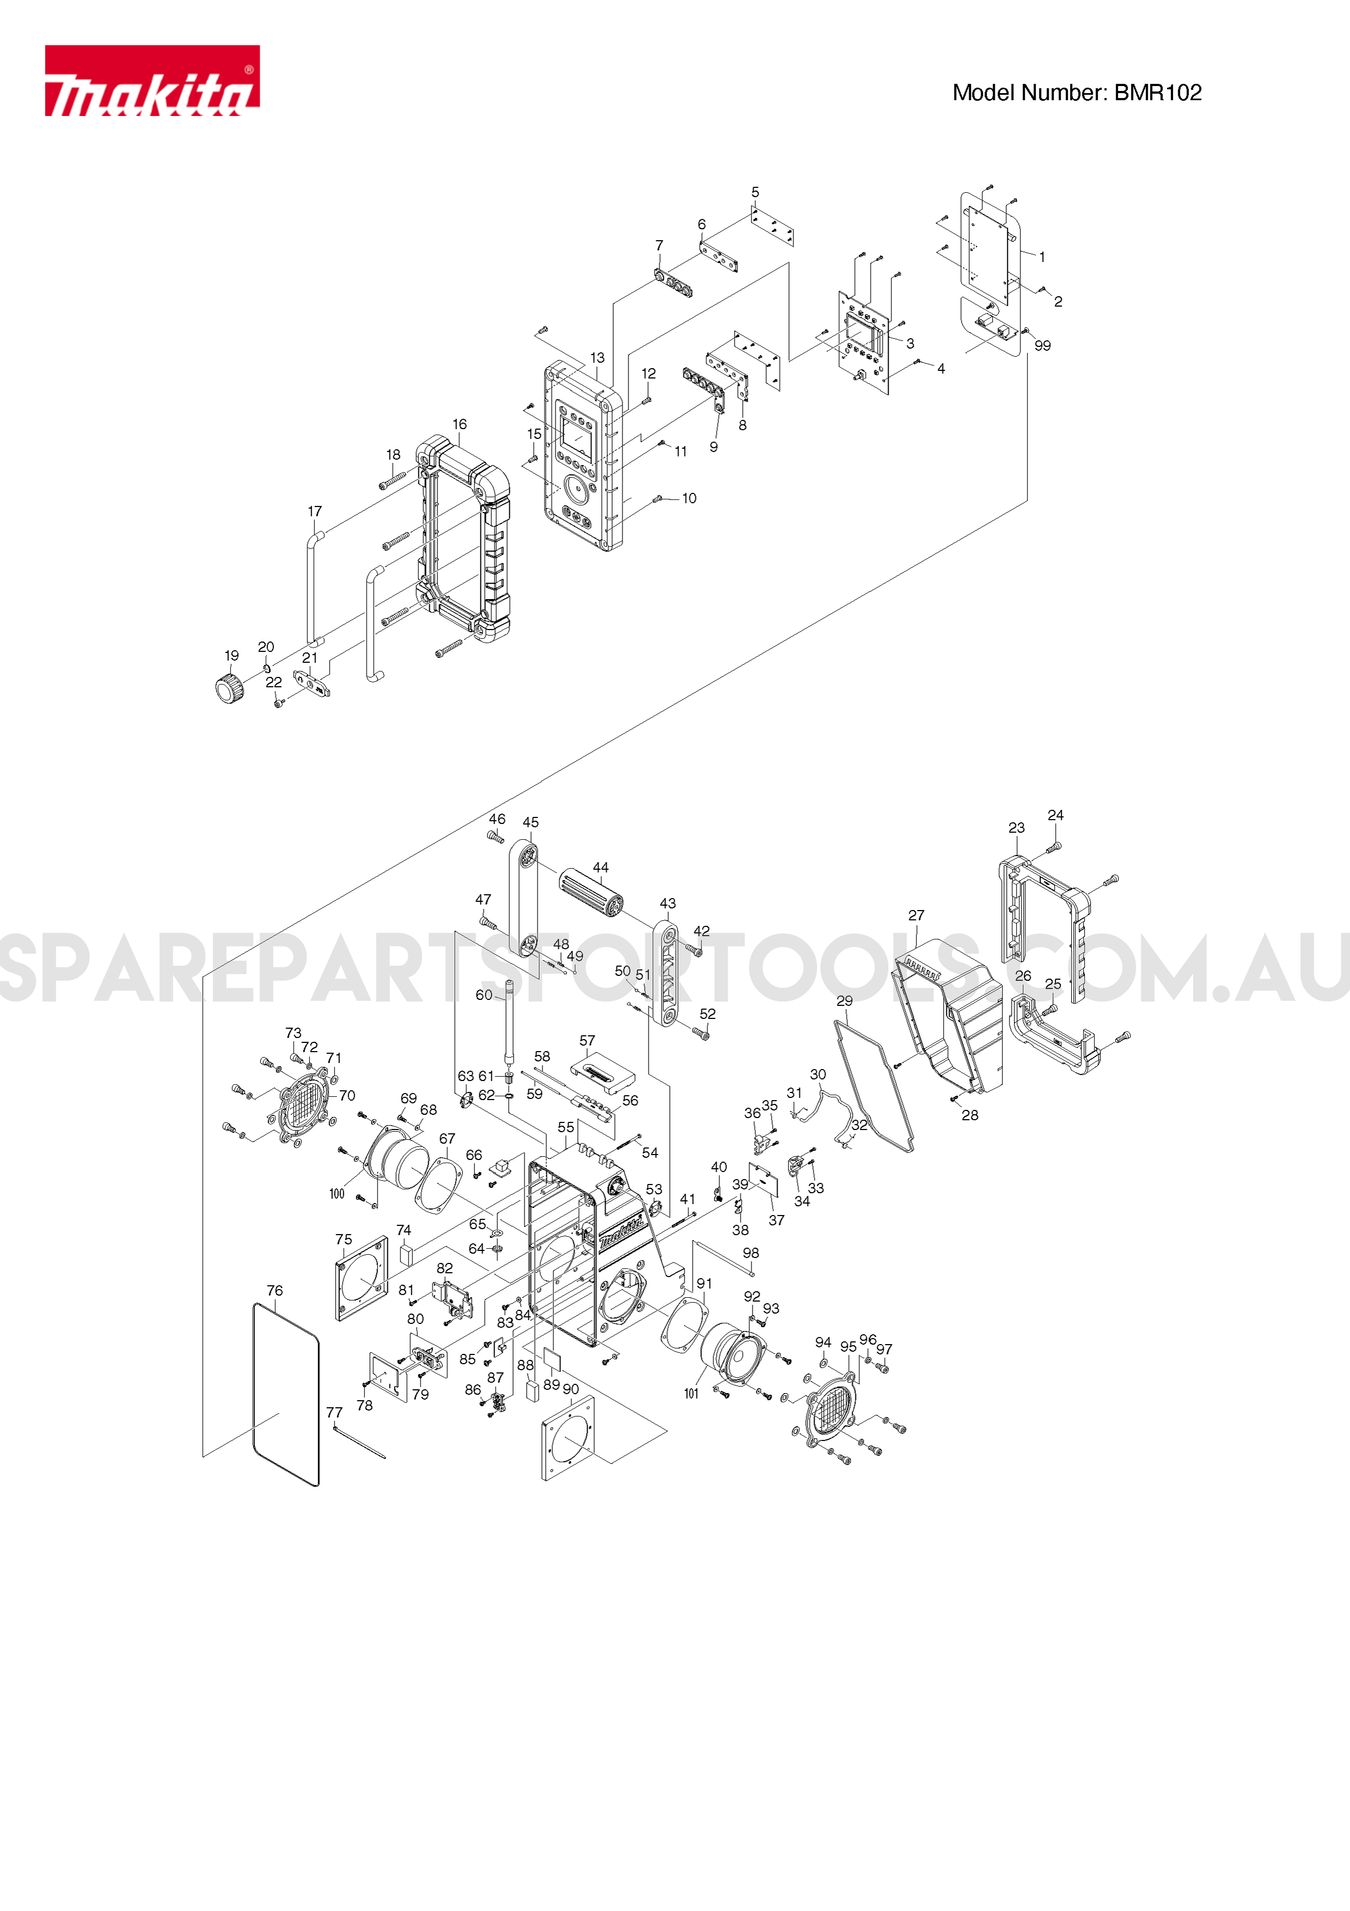 Makita BMR102 Spare Parts